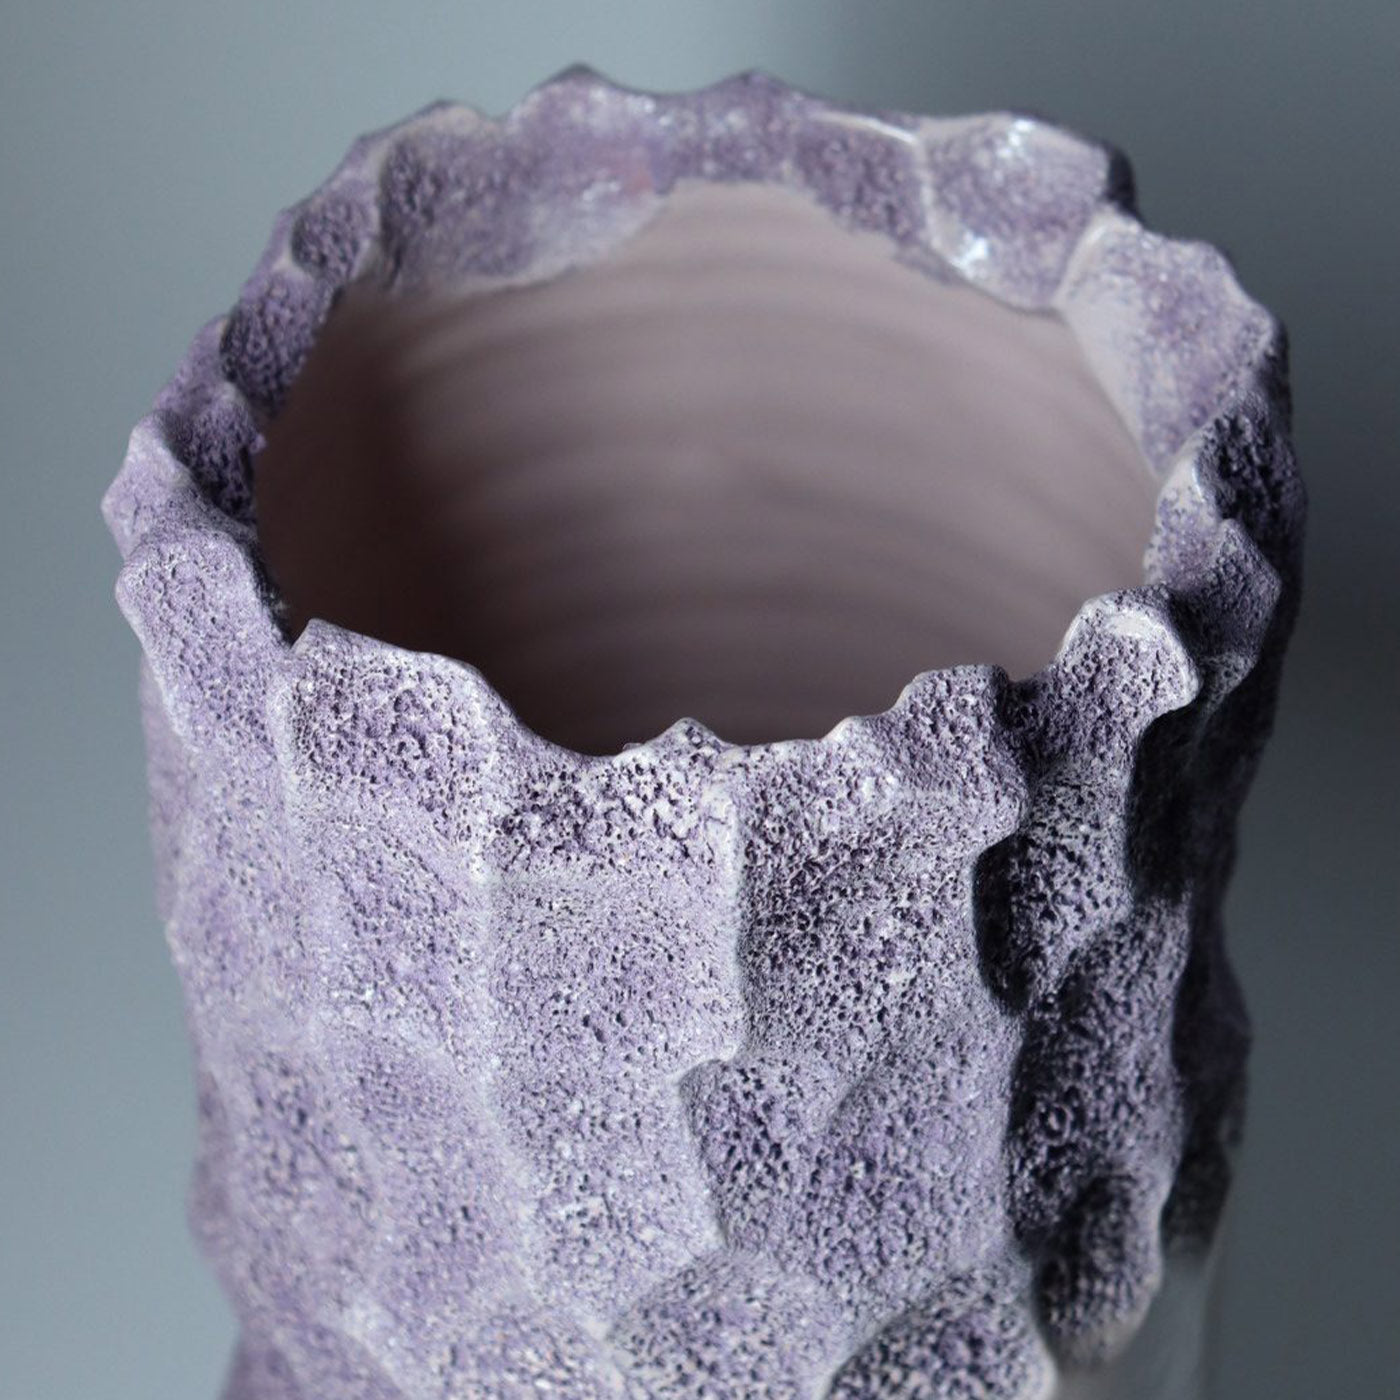 Rosa Oxymoron-Vase von Patricia Urquiola - Alternative Ansicht 2